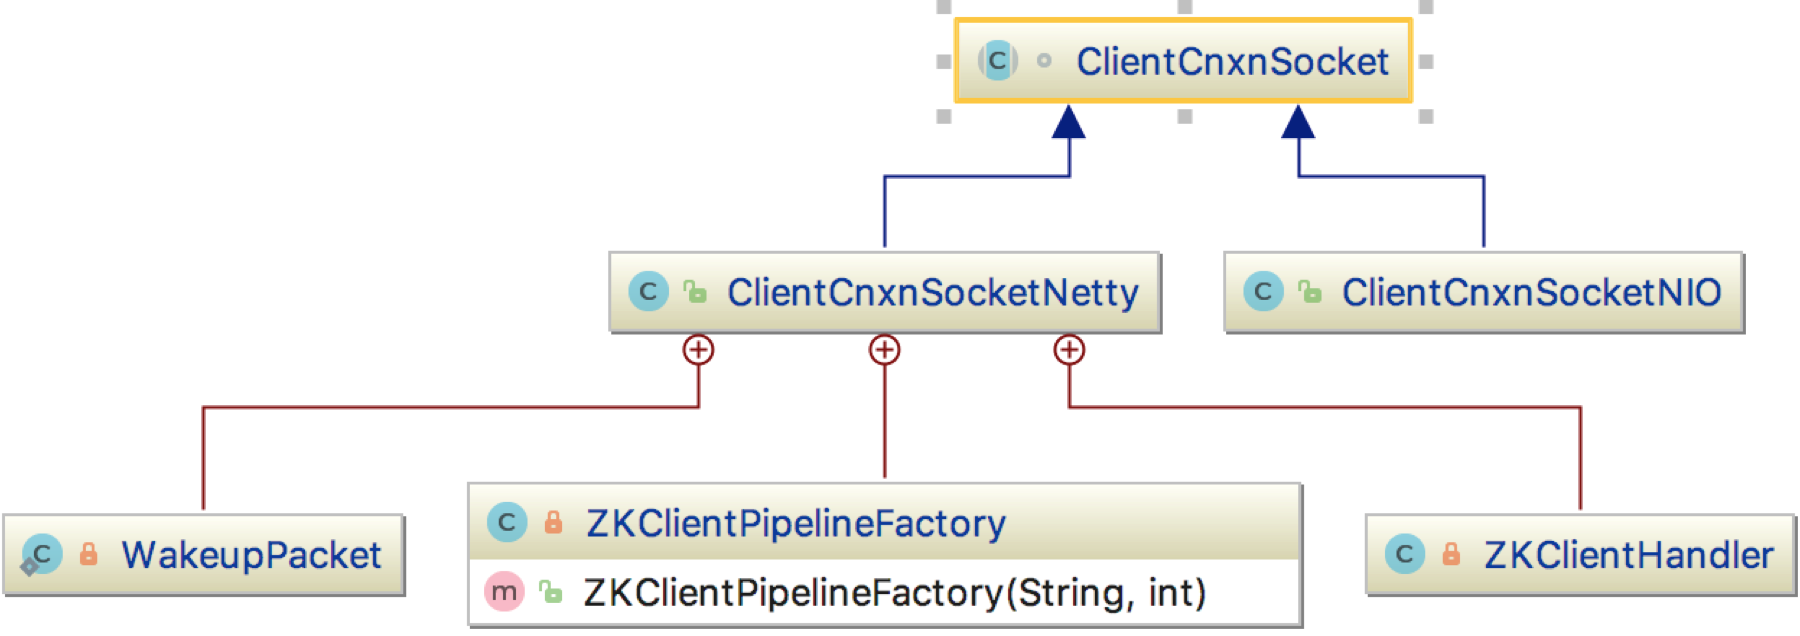 如何理解zk-client通信层ClientCnxnSocket